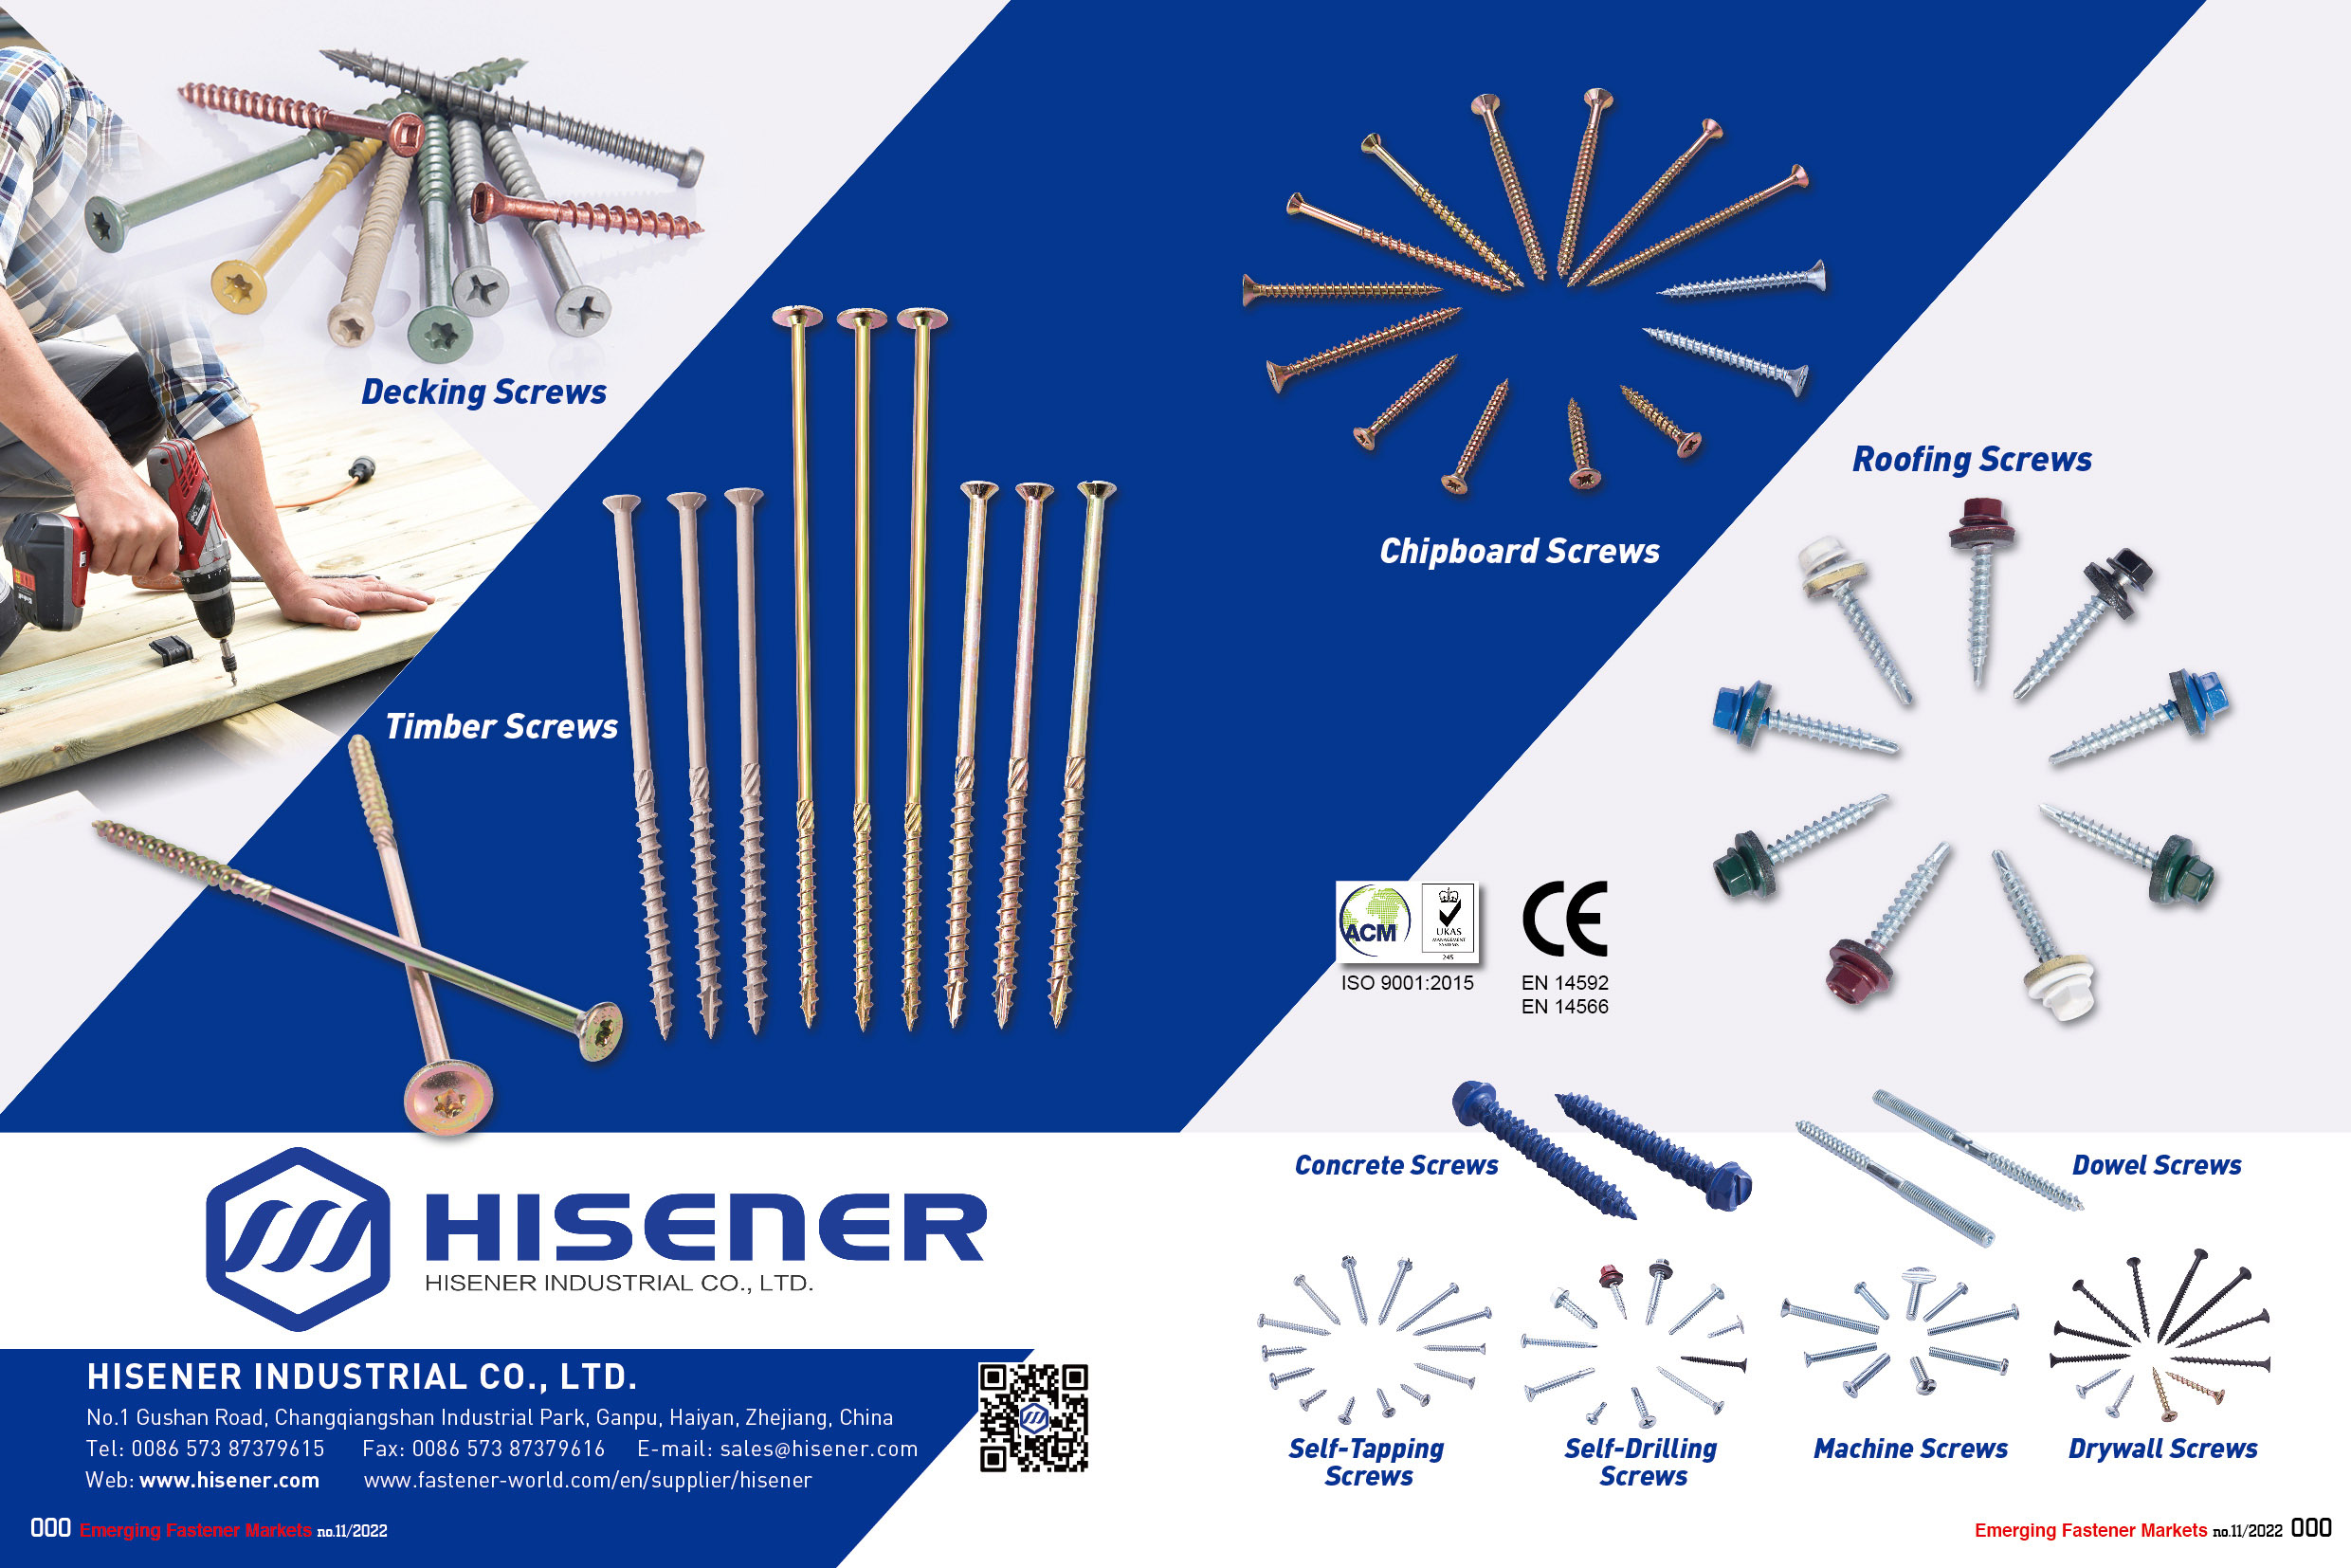 HISENER INDUSTRIAL CO., LTD. , Deck Screws/Wood Screws / Roofing Screws / Chipboard Screws / Concrete Screws / Self-Tapping Screws / Machine Screws / Self-drilling Screws